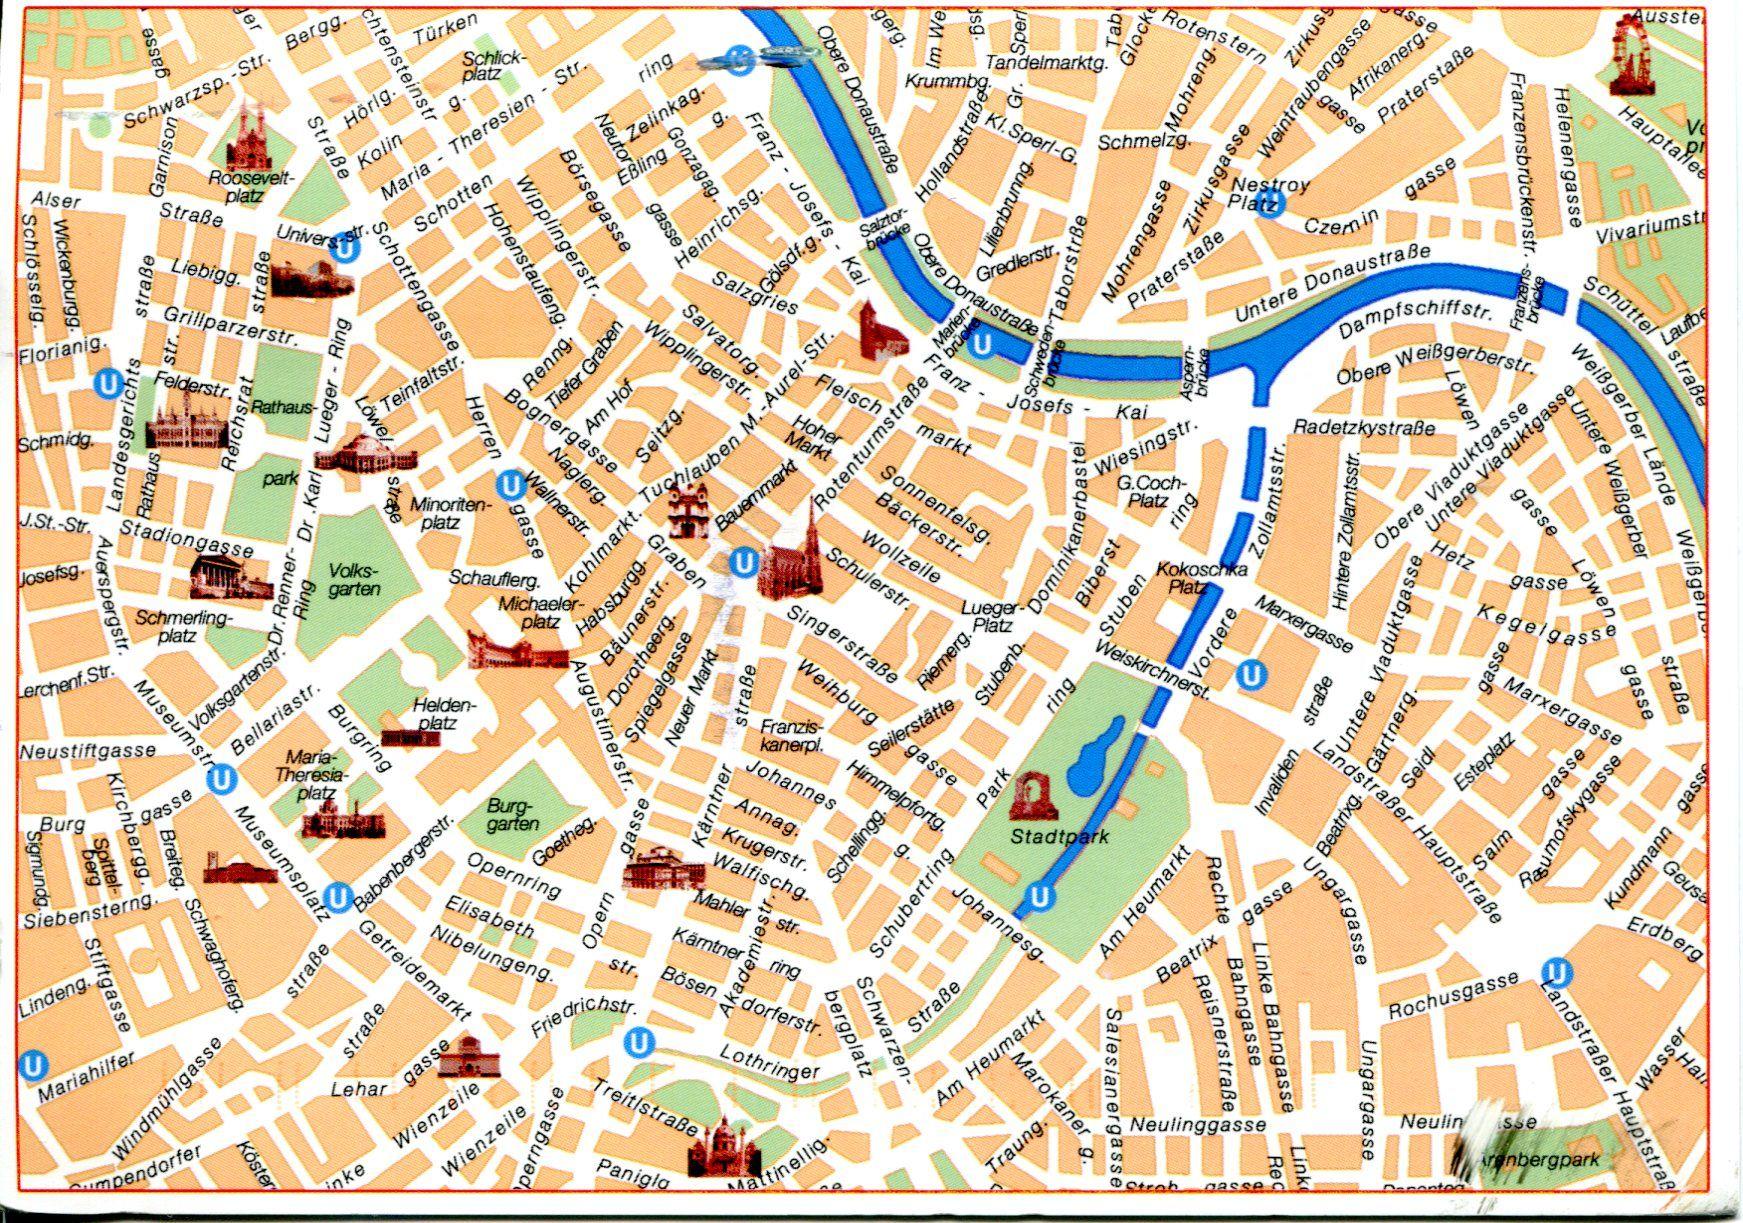 bécs belváros térkép Becs Latnivalok Terkep Europa Terkep bécs belváros térkép